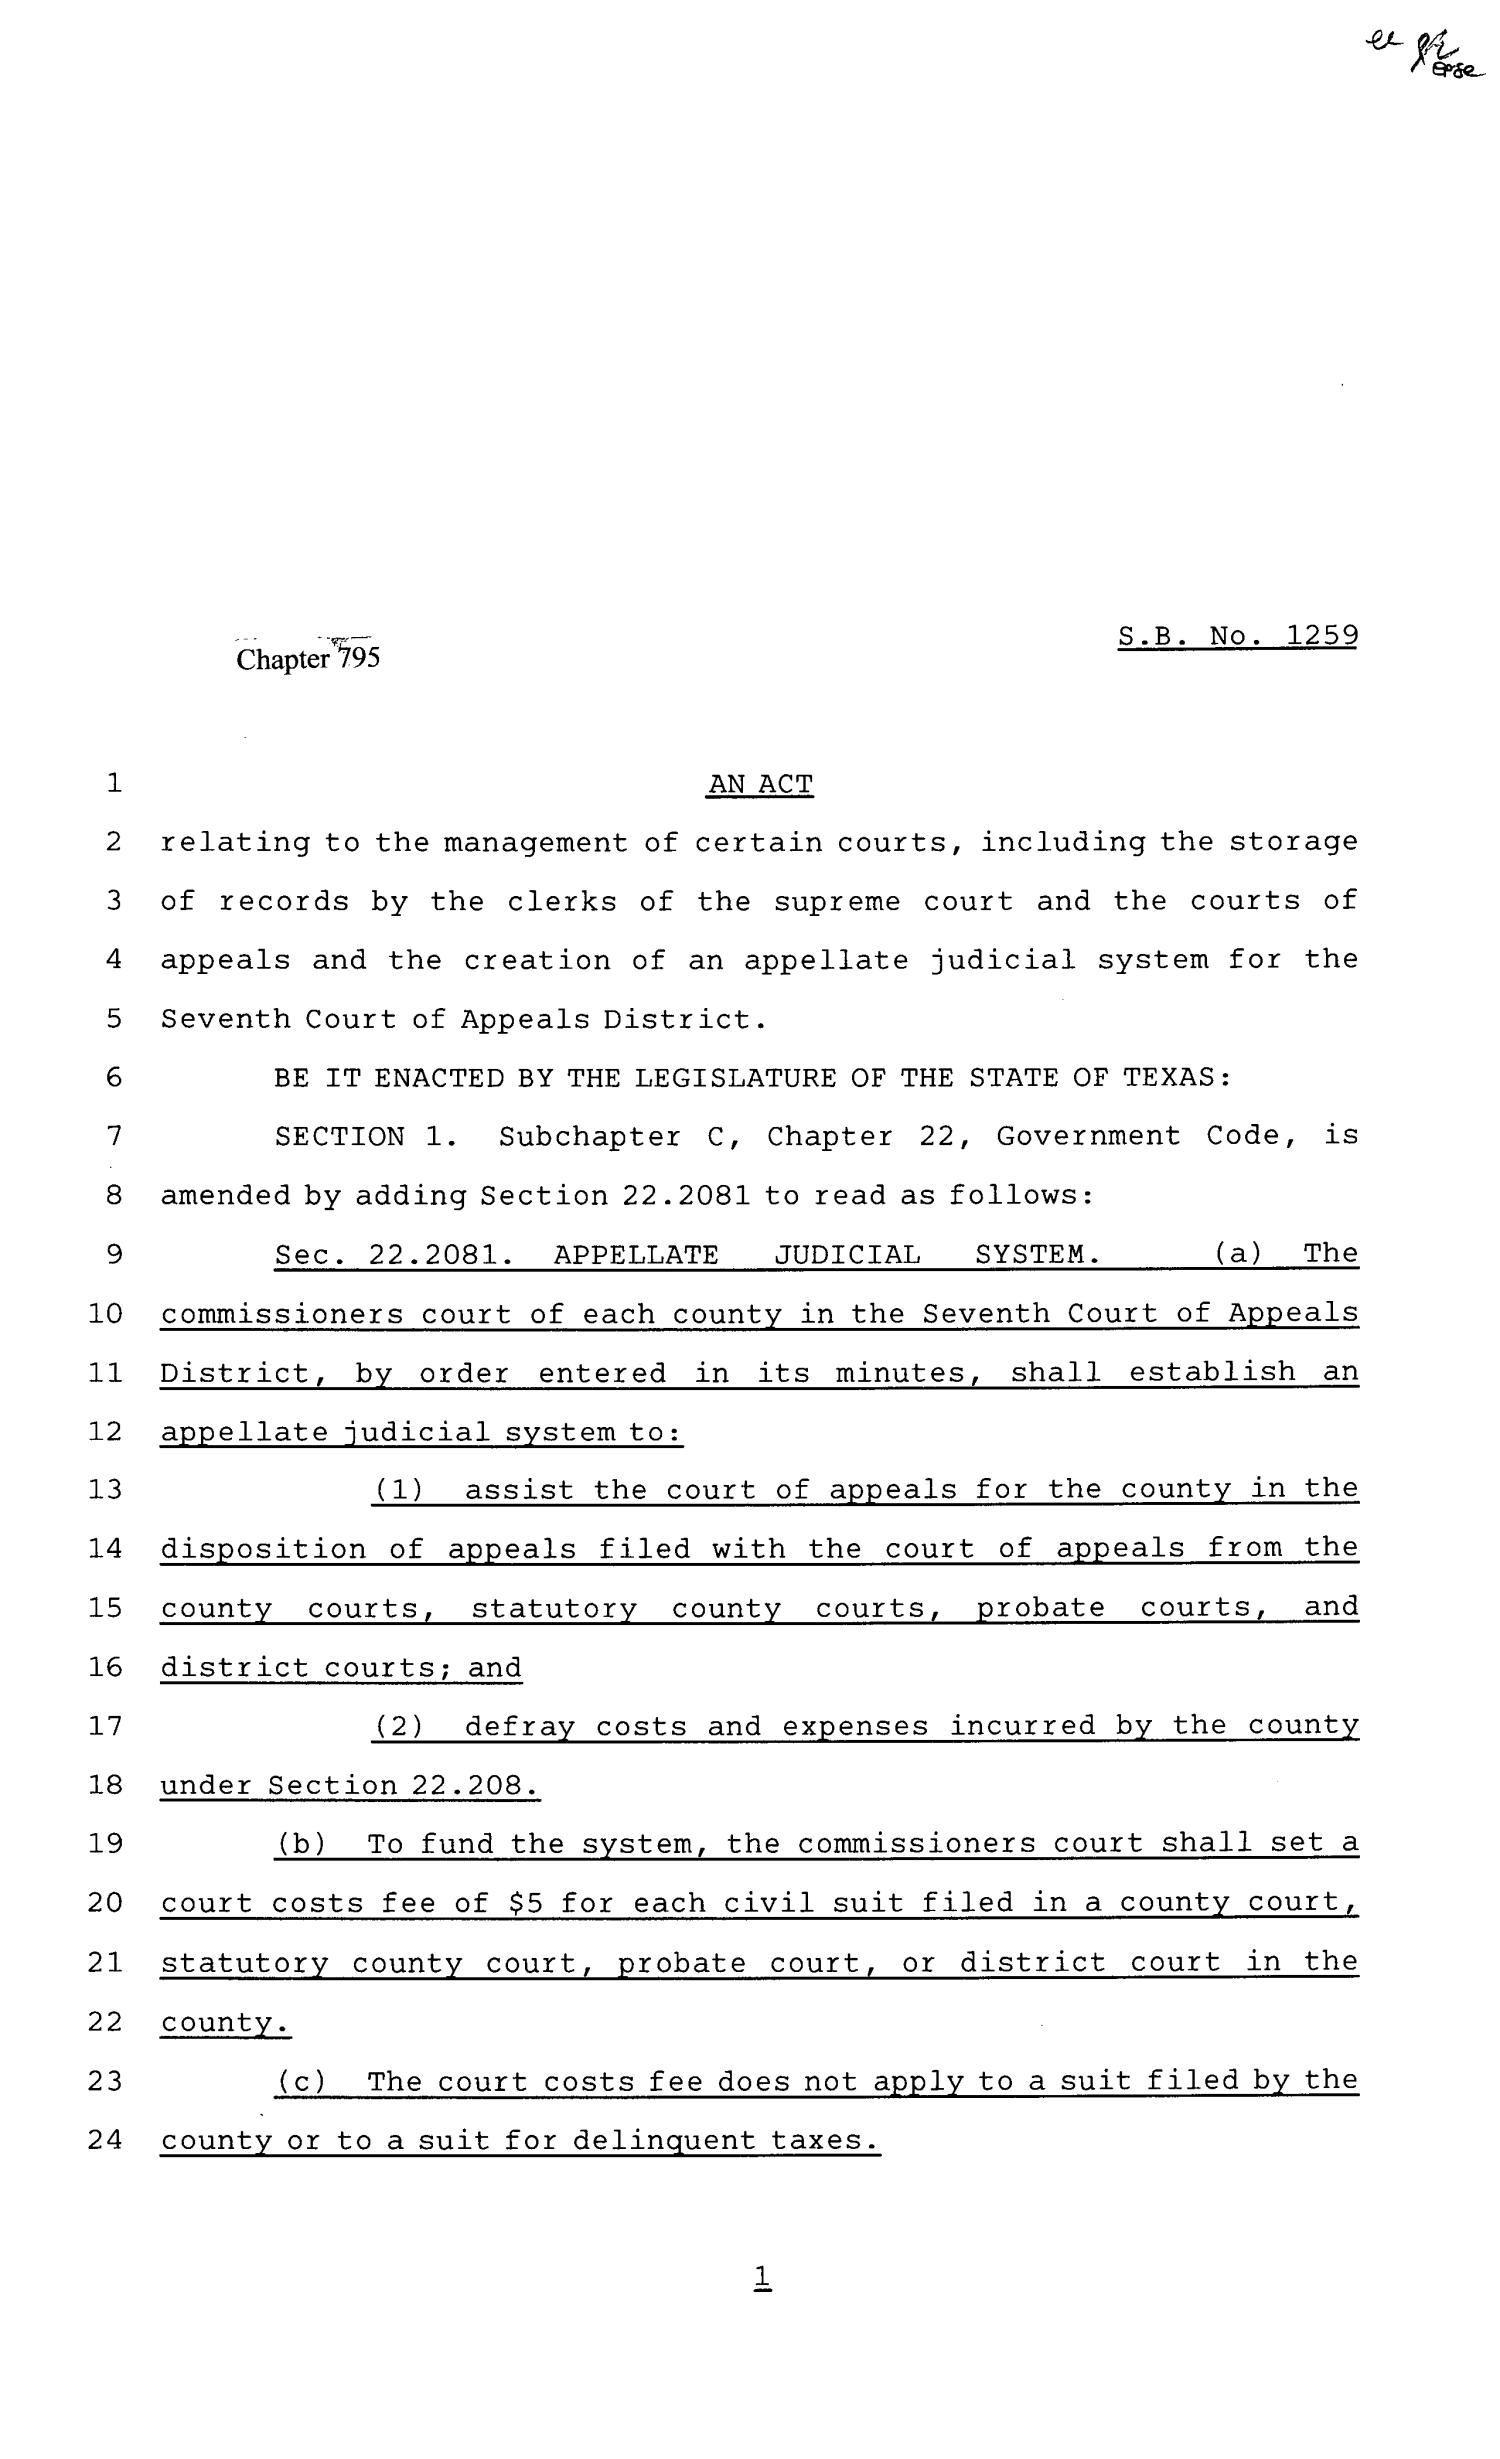 81st Texas Legislature, Senate Bill 1259, Chapter 795
                                                
                                                    [Sequence #]: 1 of 8
                                                